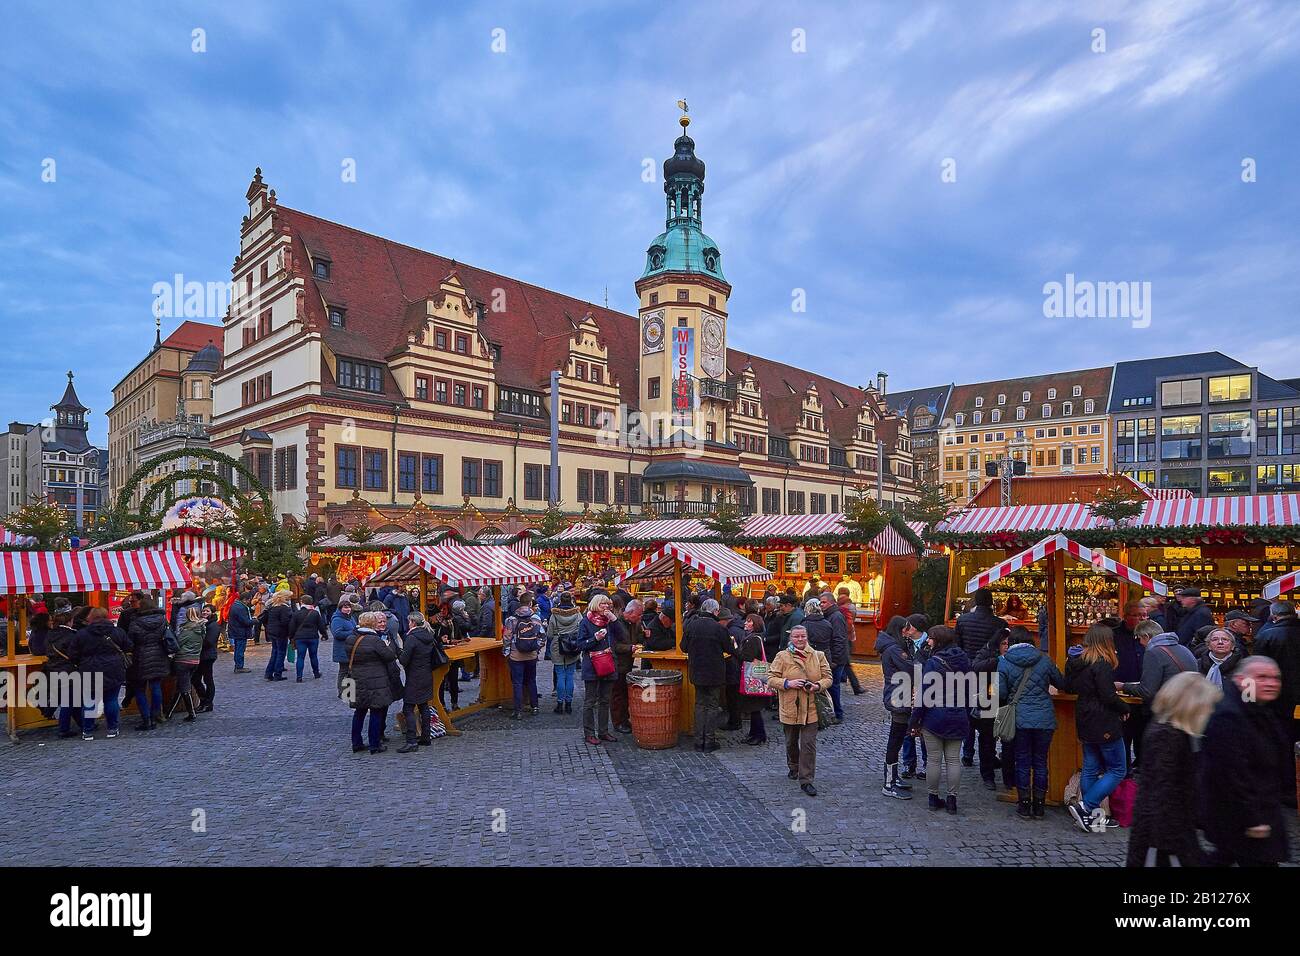 Weihnachtsmarkt auf dem Marktplatz mit Dem Alten Rathaus in Leipzig, Sachsen, Deutschland Stockfoto